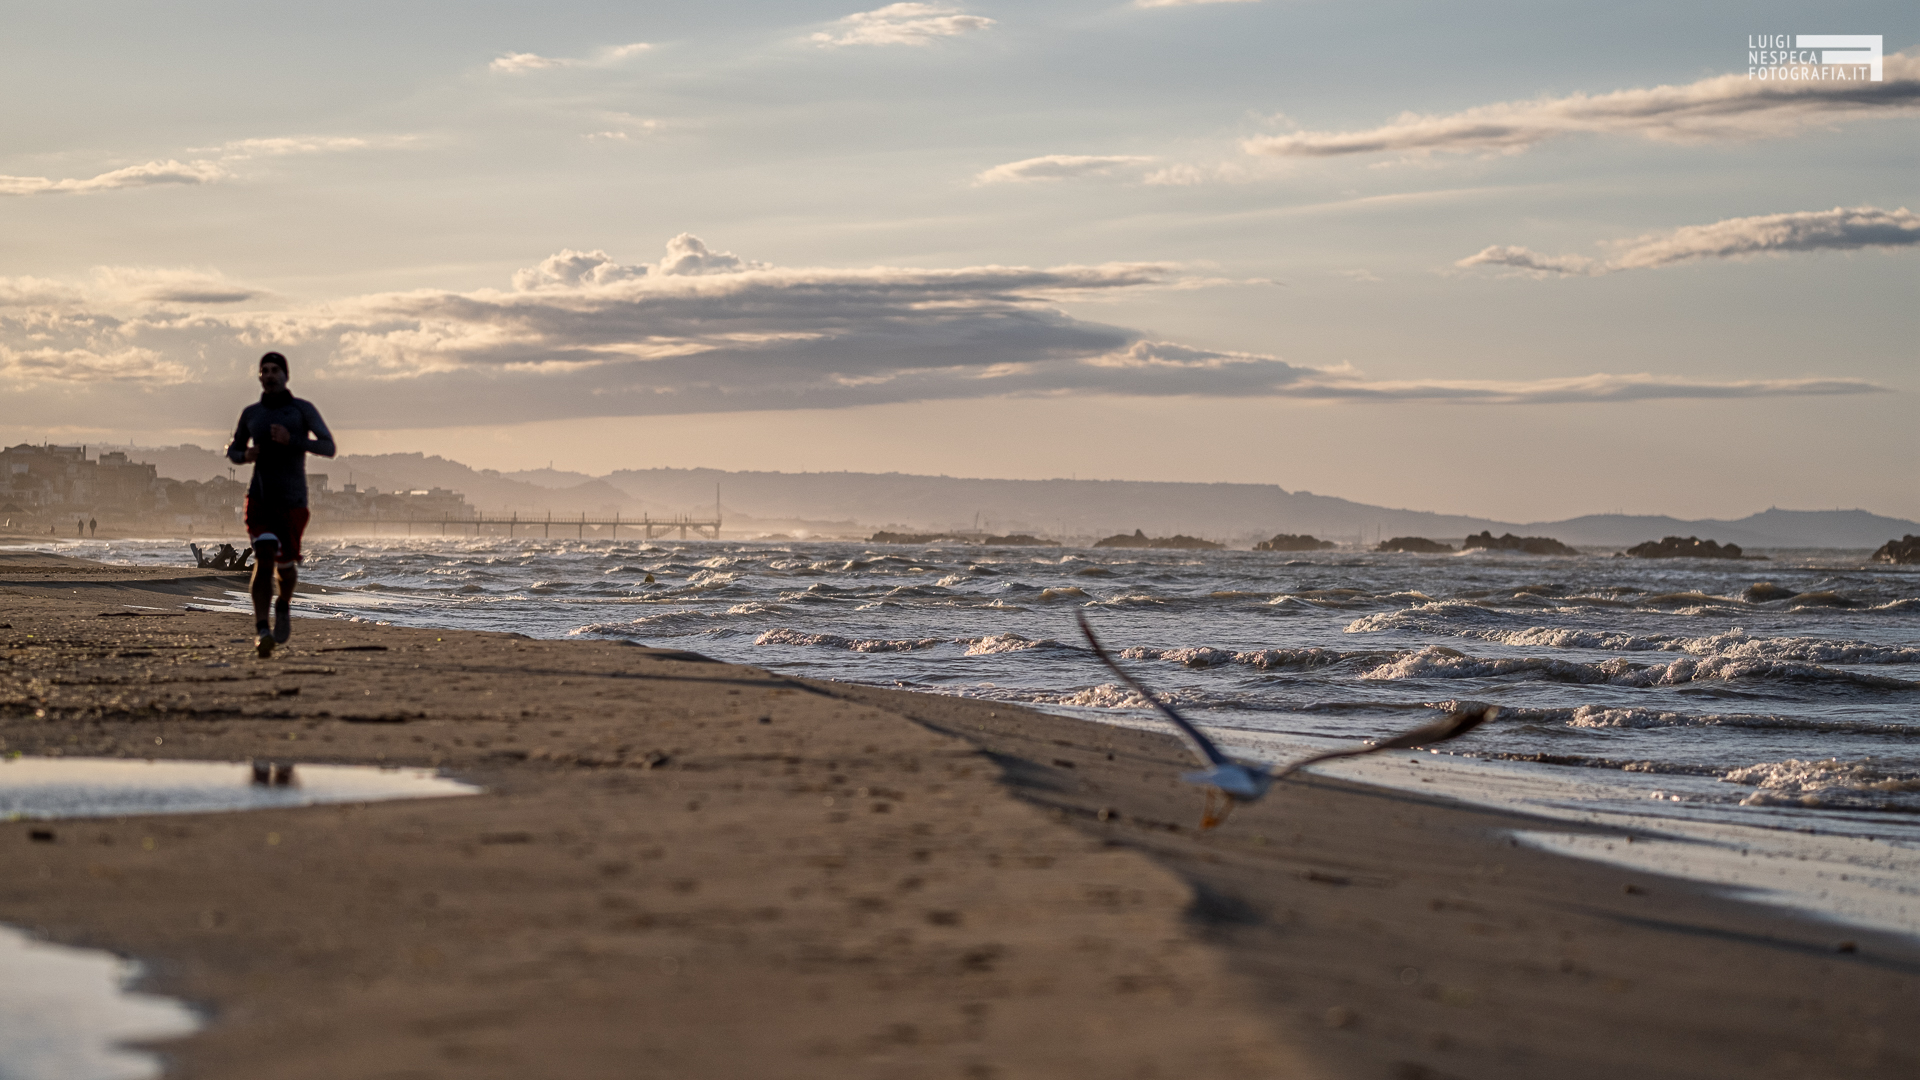 La spiaggia di Francavilla al Mare: un runner e un gabbiano